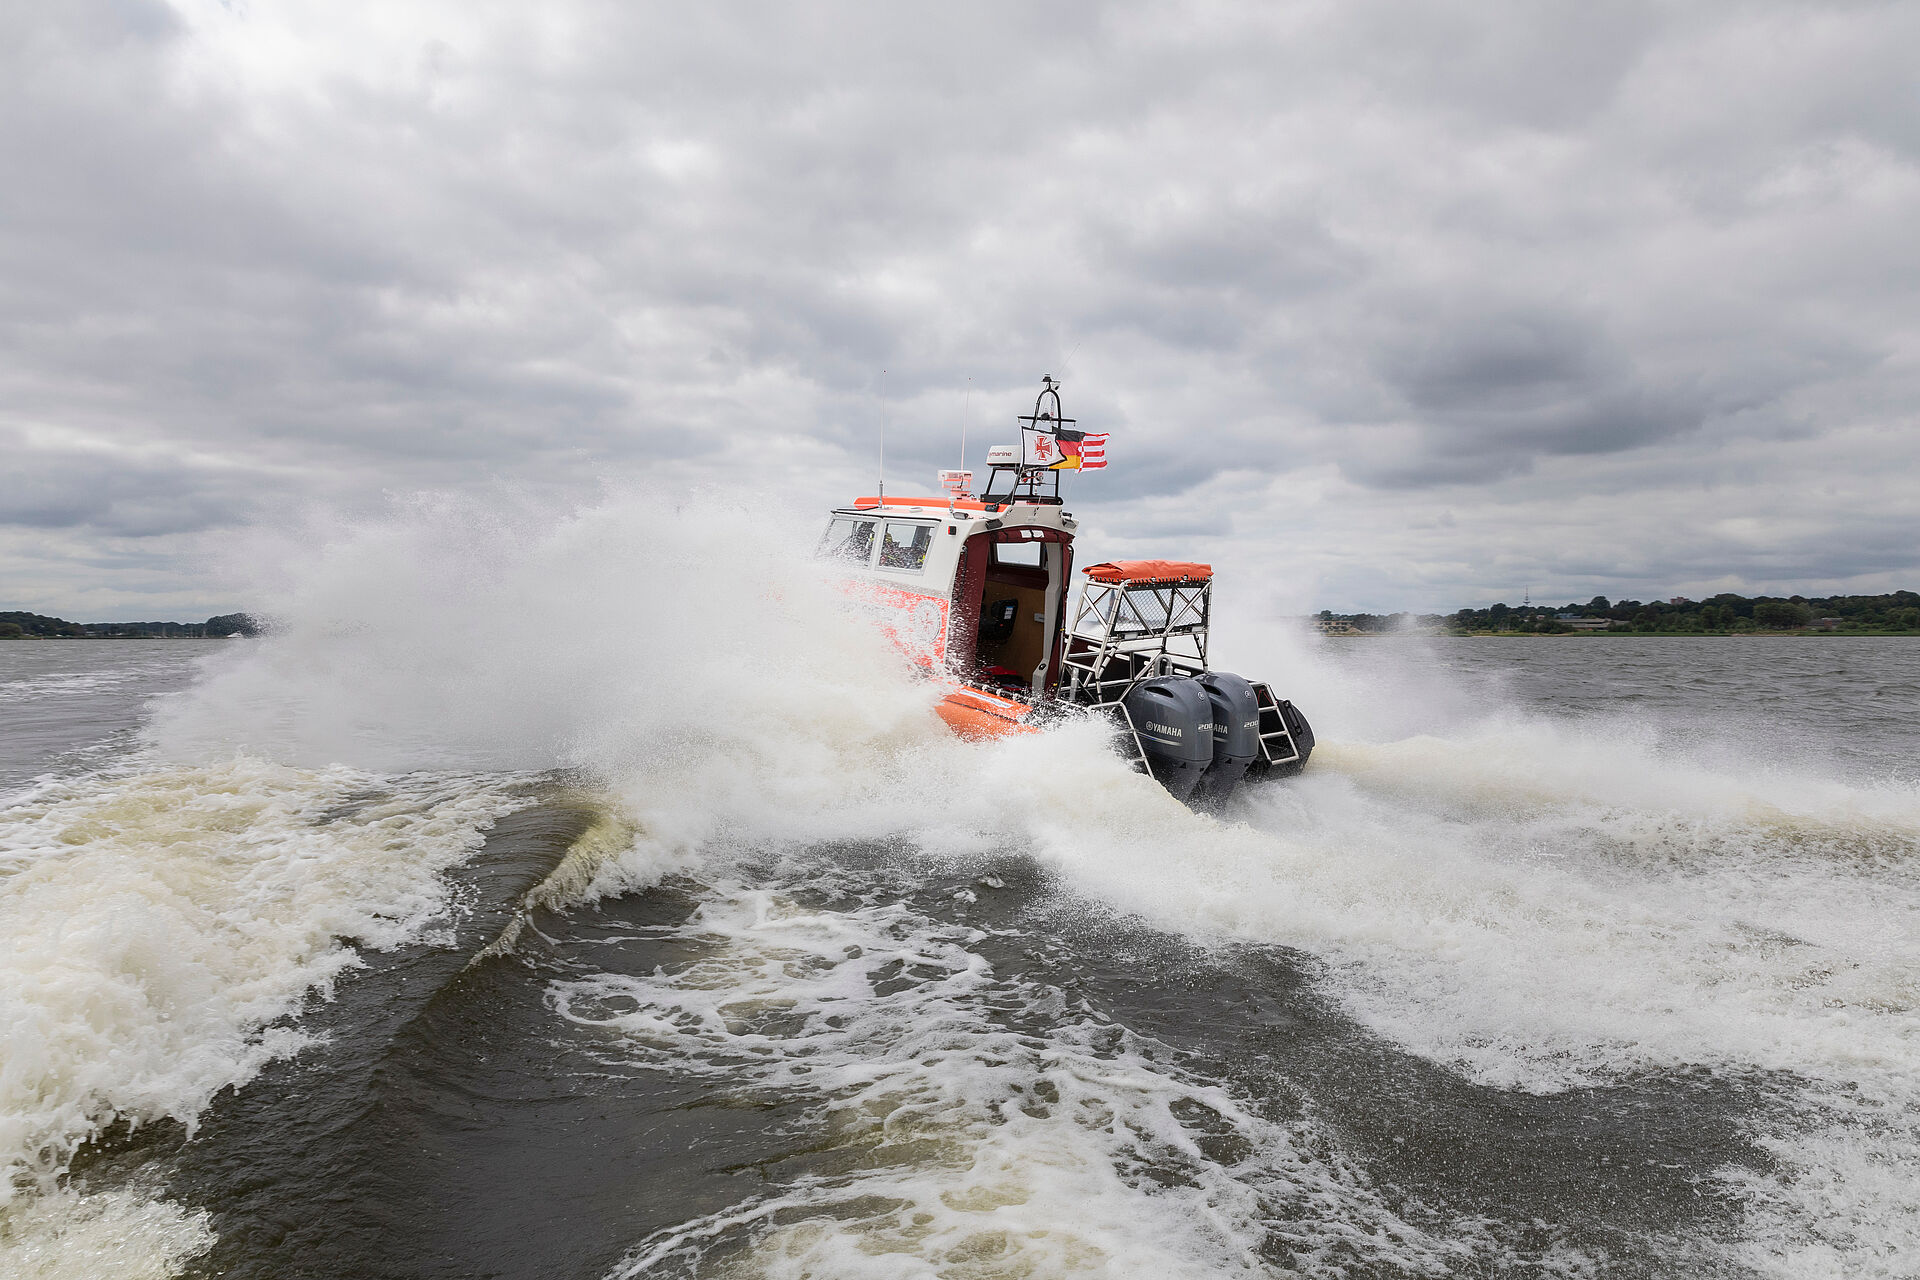 Heckansicht des Seenotrettungsbootes HERWIL GÖTSCH: Es fährt in die aufgewühlten Wellen, Wasser spritzt seitlich vom Rumpf des Bootes weg.